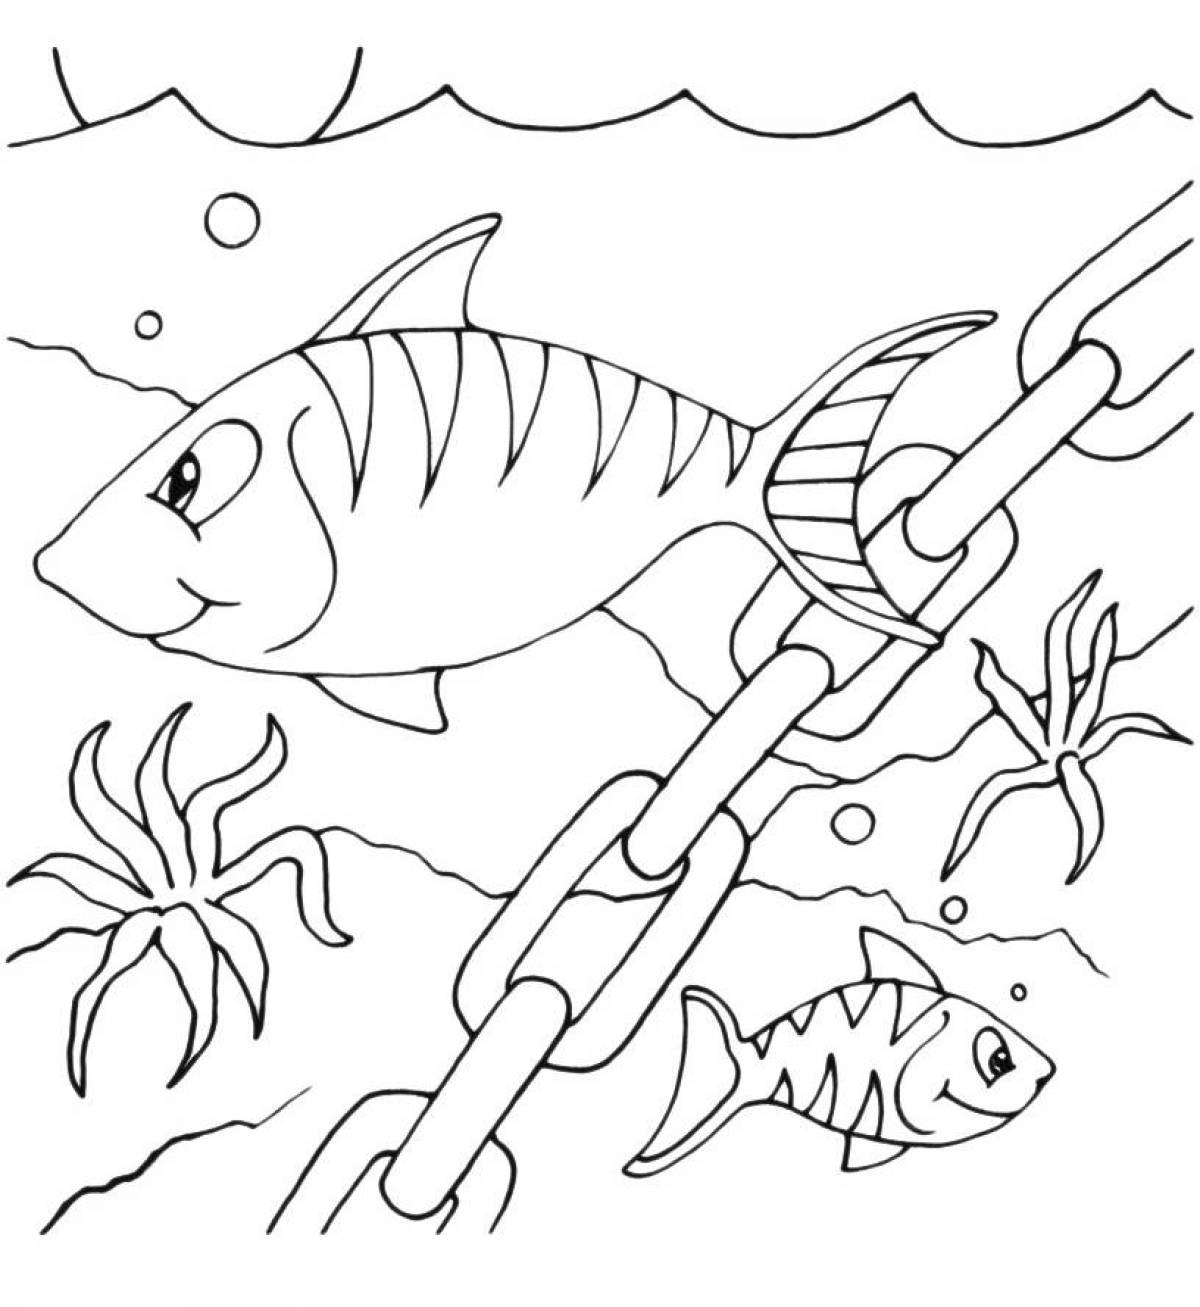 Раскраски для детей на тему рыбы